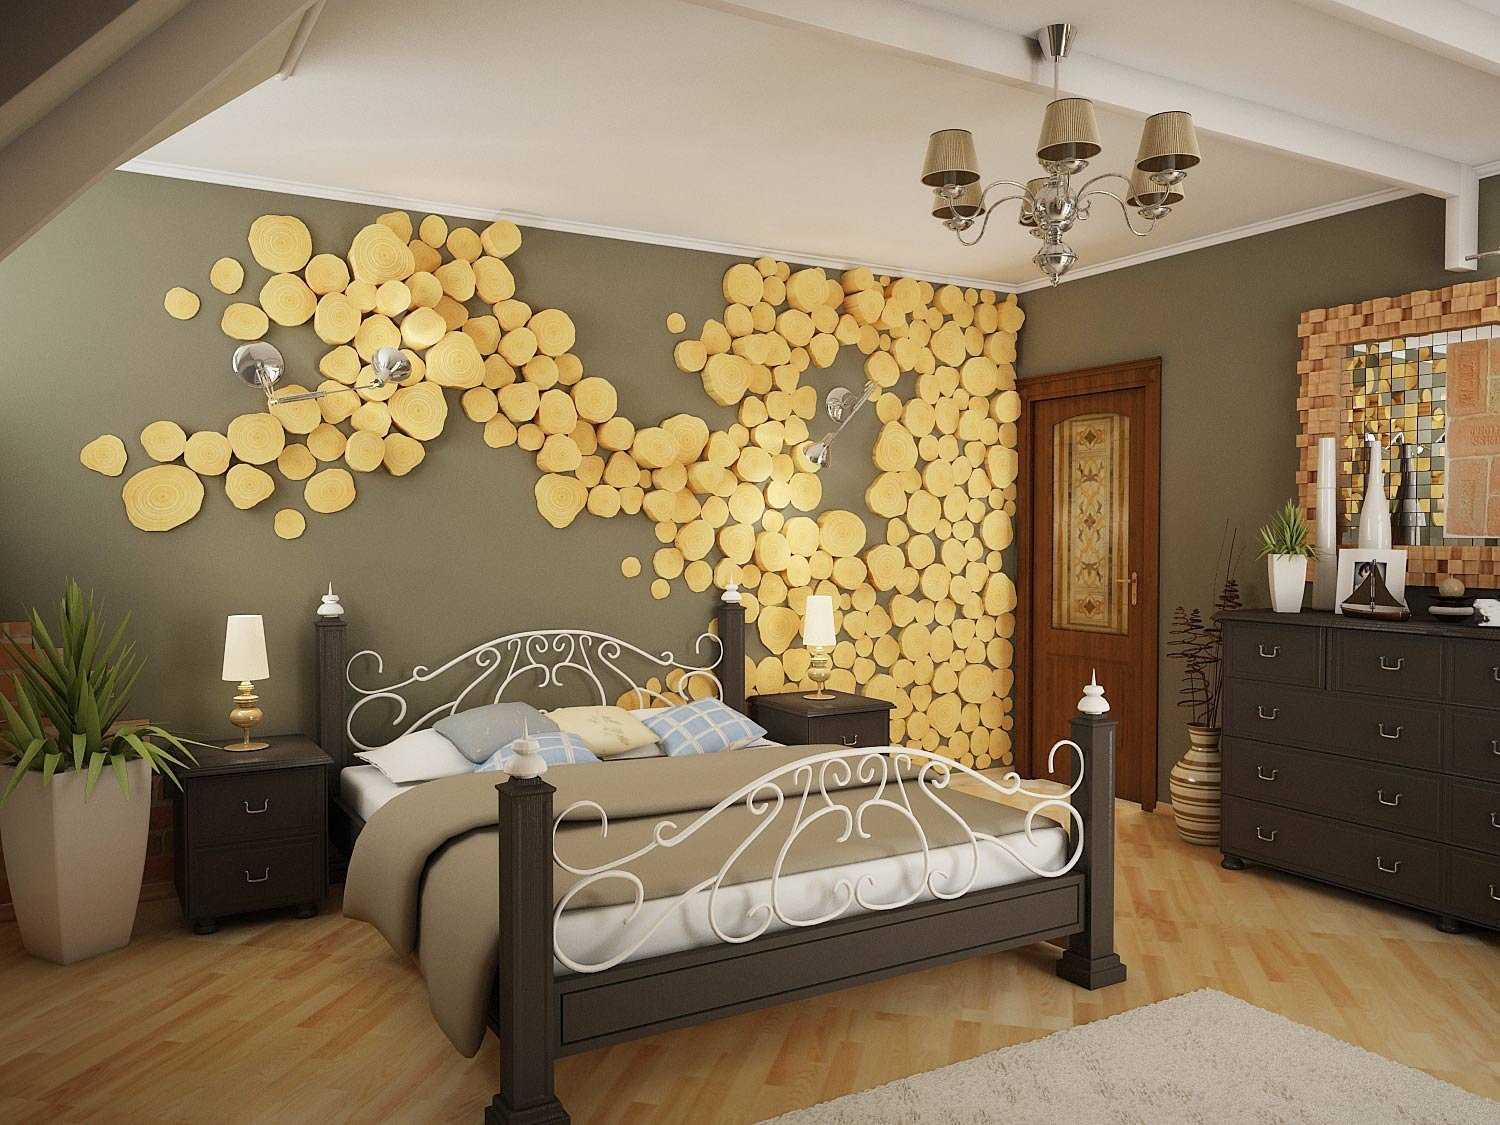 Фотообои в спальню (114 фото): над кроватью и на стенах, примеры дизайна интерьера маленькой комнаты, розы, какие выбрать по фэн-шуй